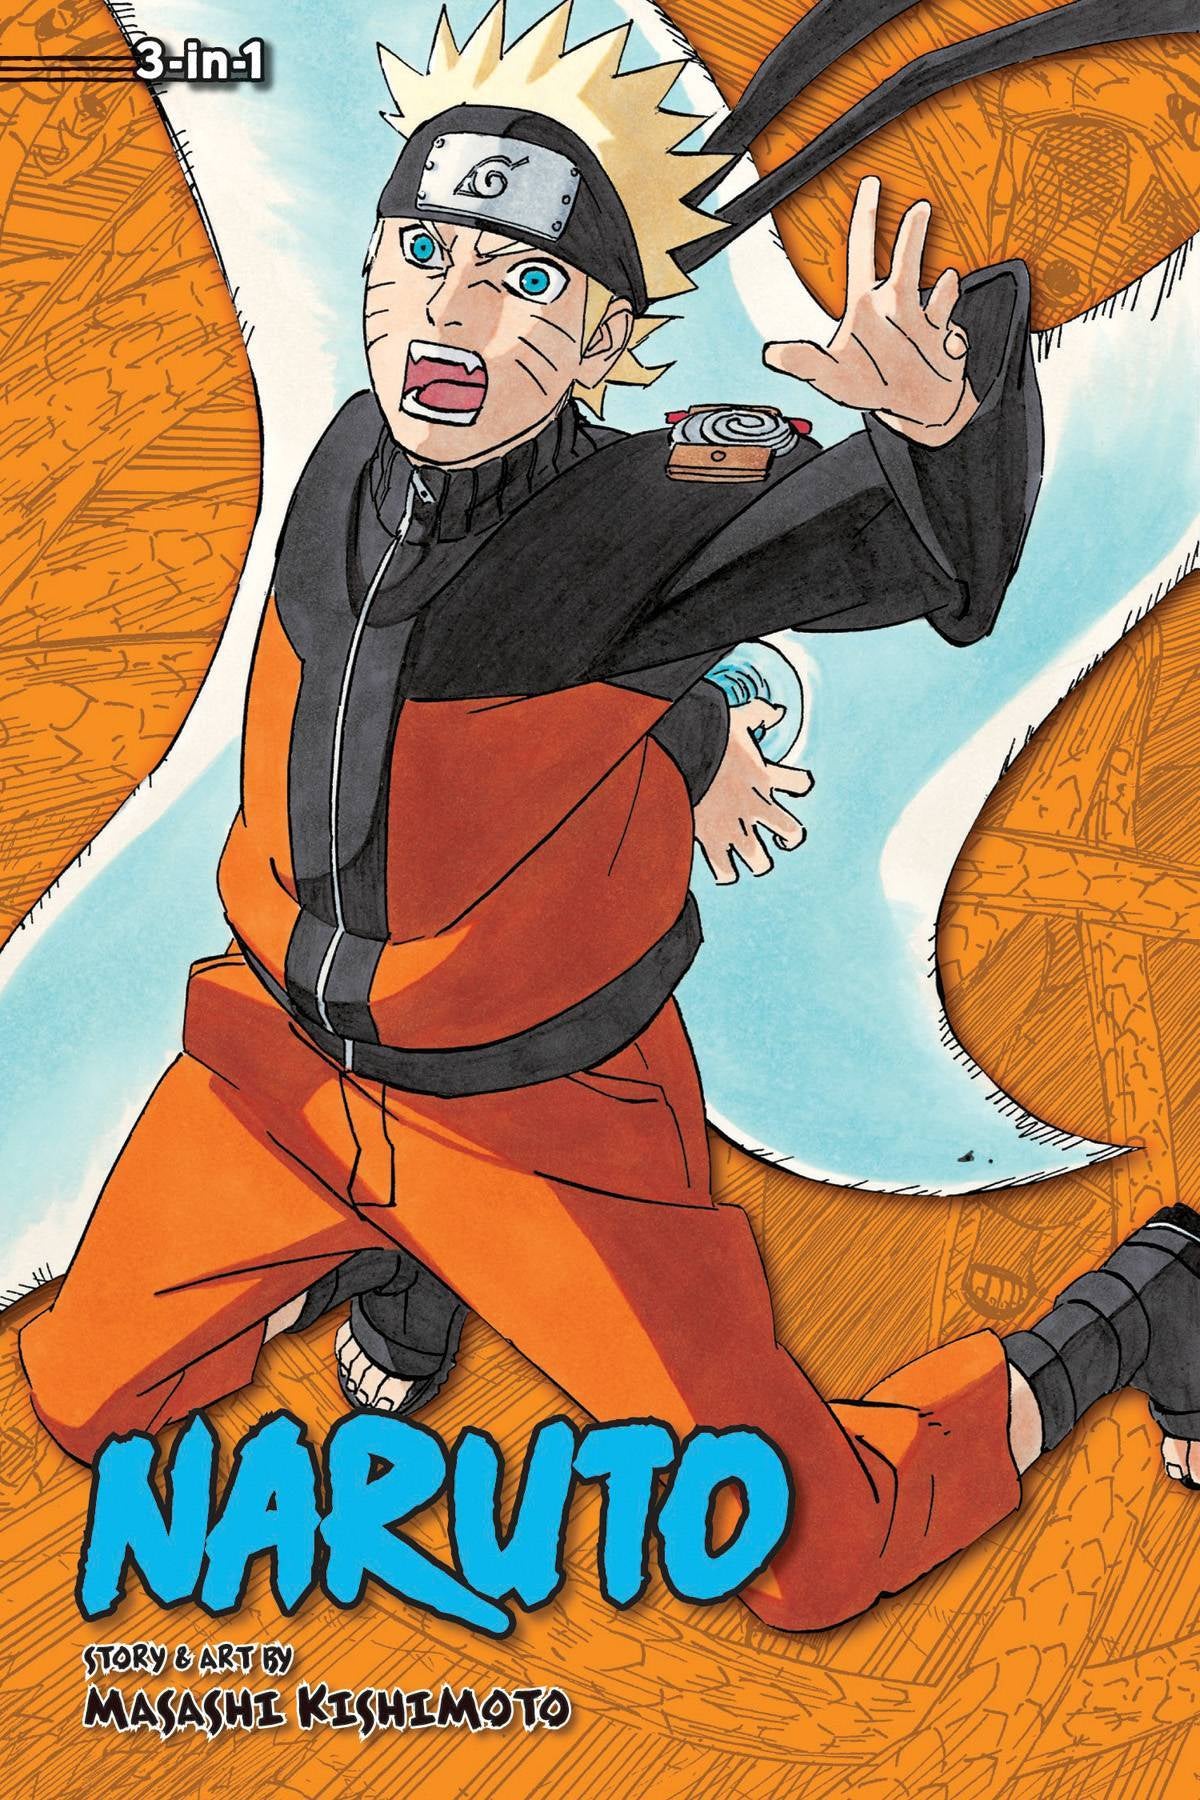 NARUTO VOLUME 19 (3 in 1 EDITION)